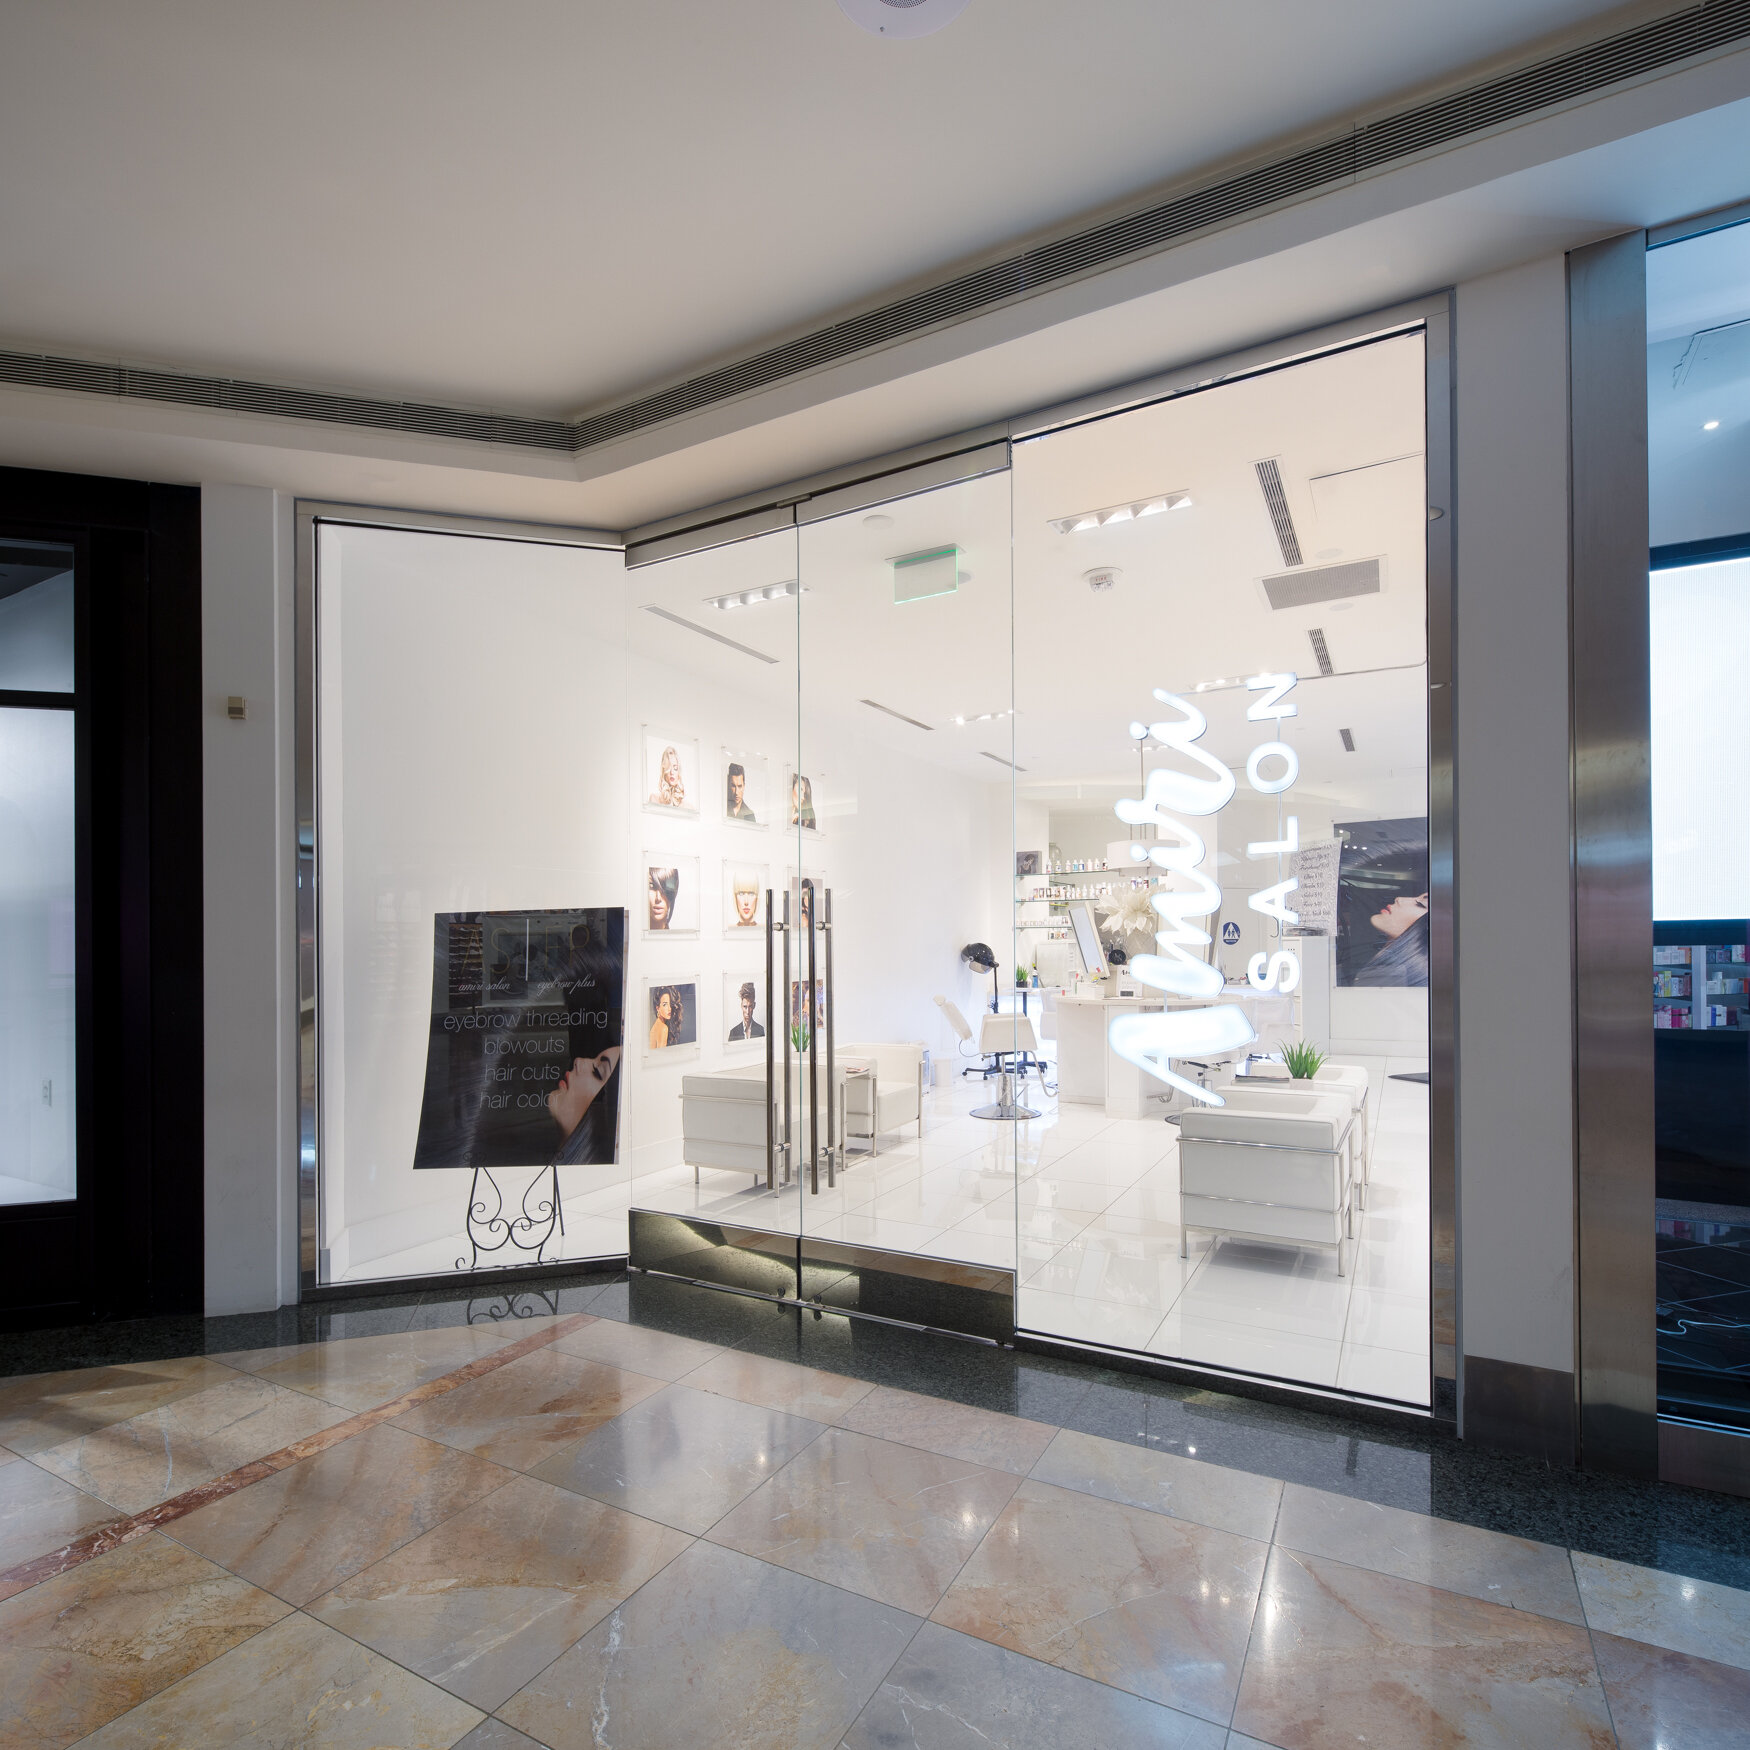 Penhaligons retail interiors by brightroomSF Interior photograohy-5.jpg